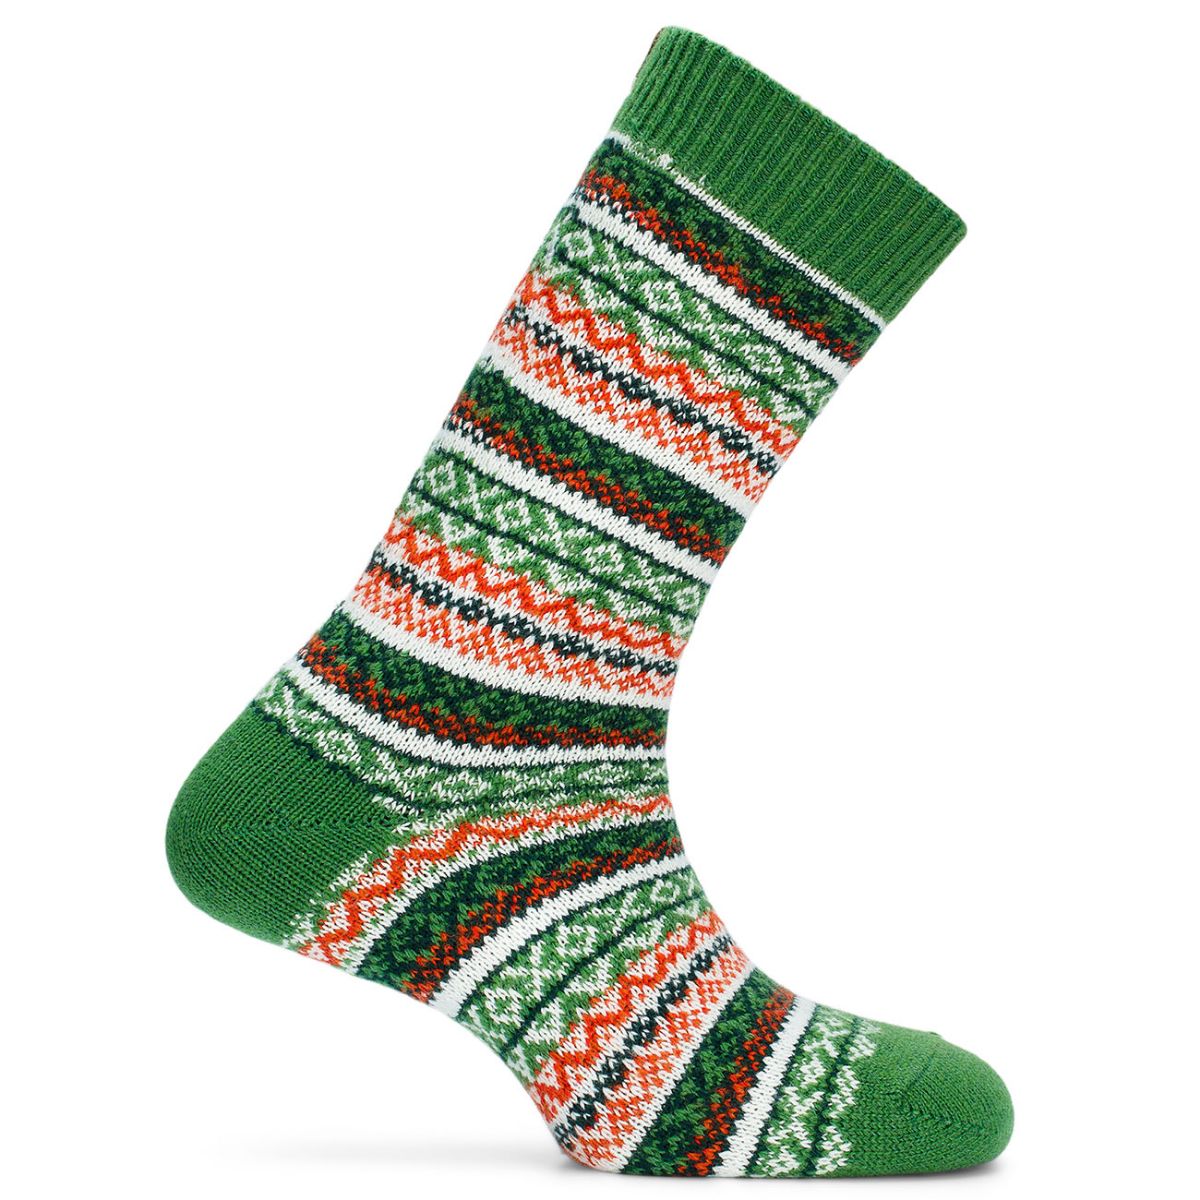 mønstret sokker i ullblanding. grønn, hvit og oransje mønster